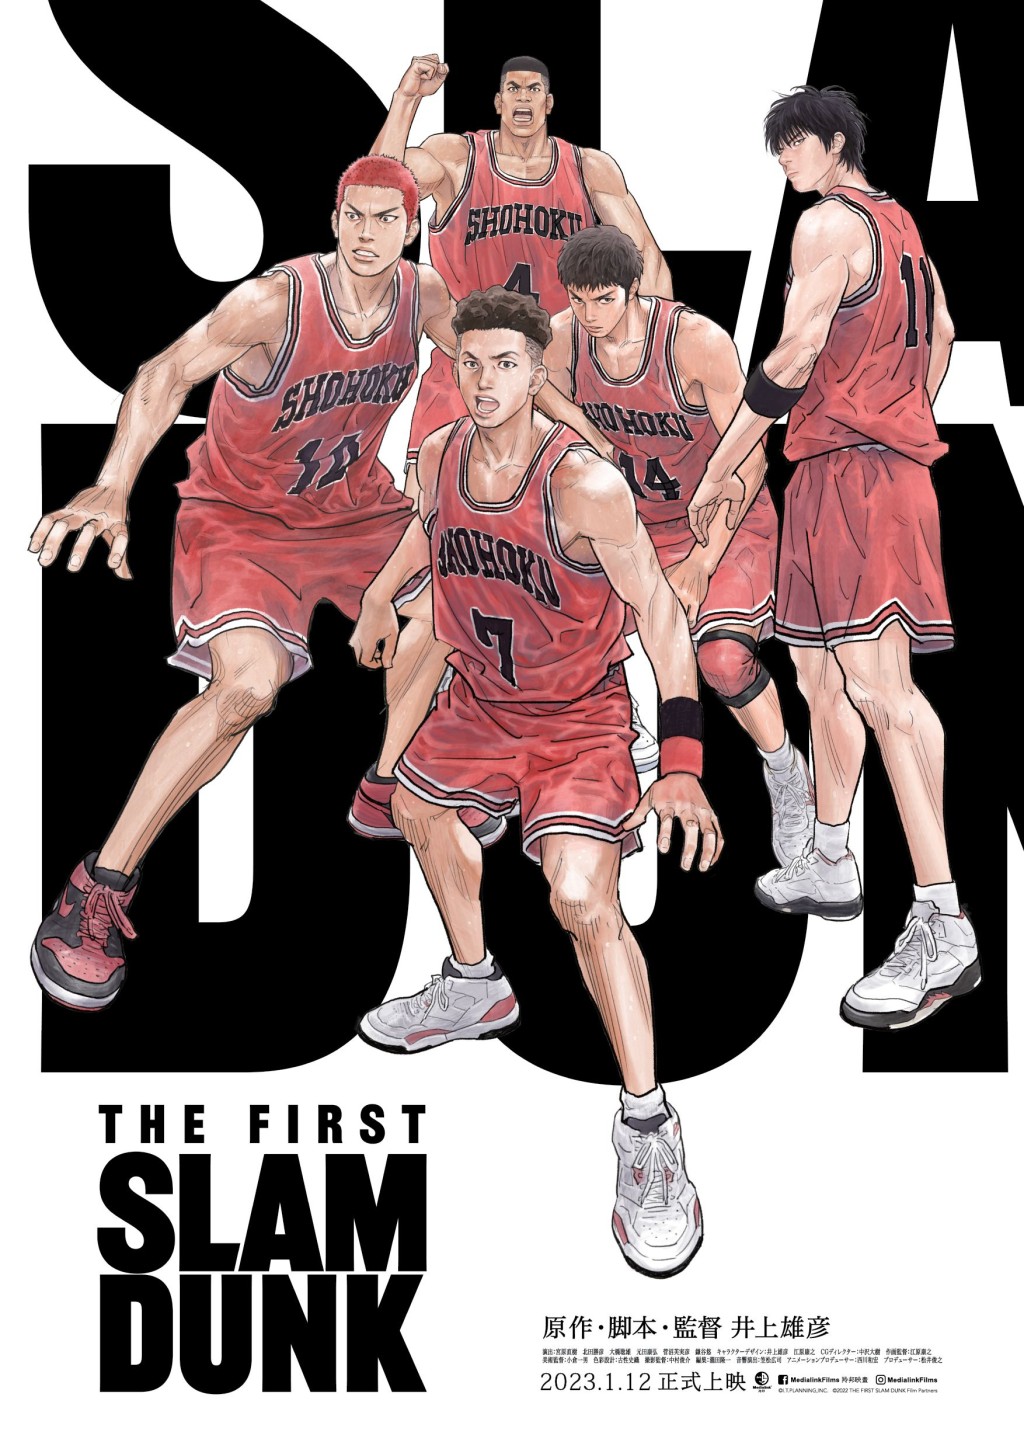 以籃球為題材的日本知名經典動漫電影《THE FIRST SLAM DUNK》在港上映掀起熱潮。